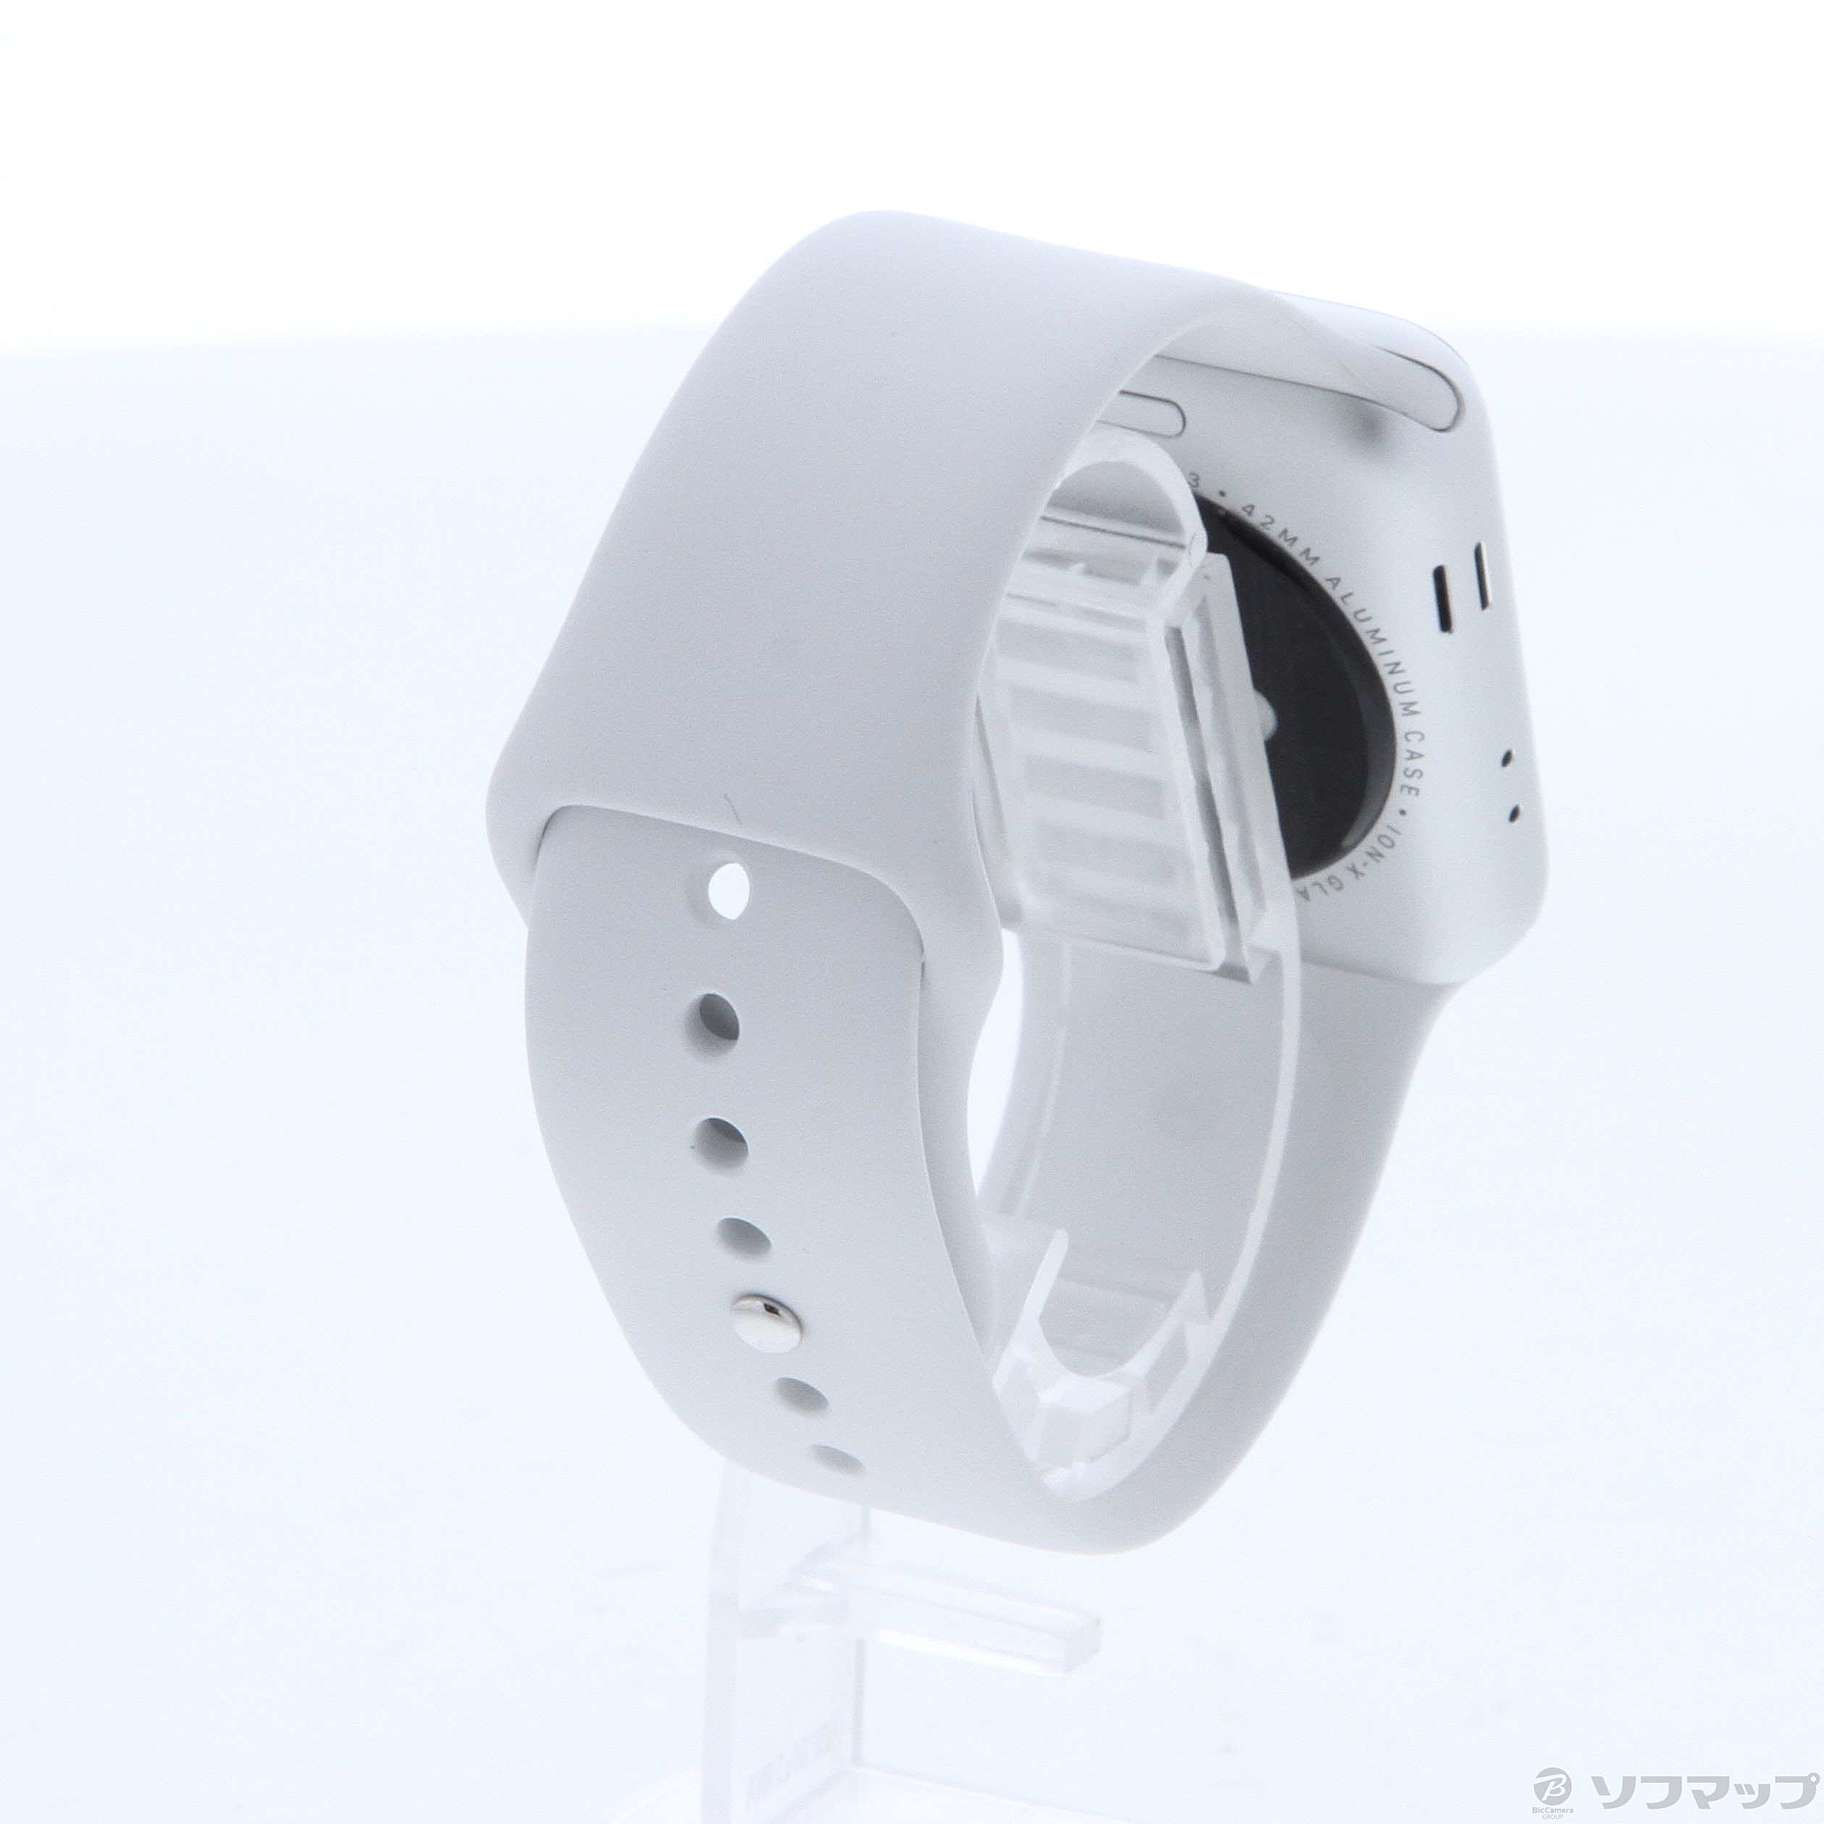 Apple Watch Series 3 GPS 42mm シルバーアルミニウムケース ホワイトスポーツバンド